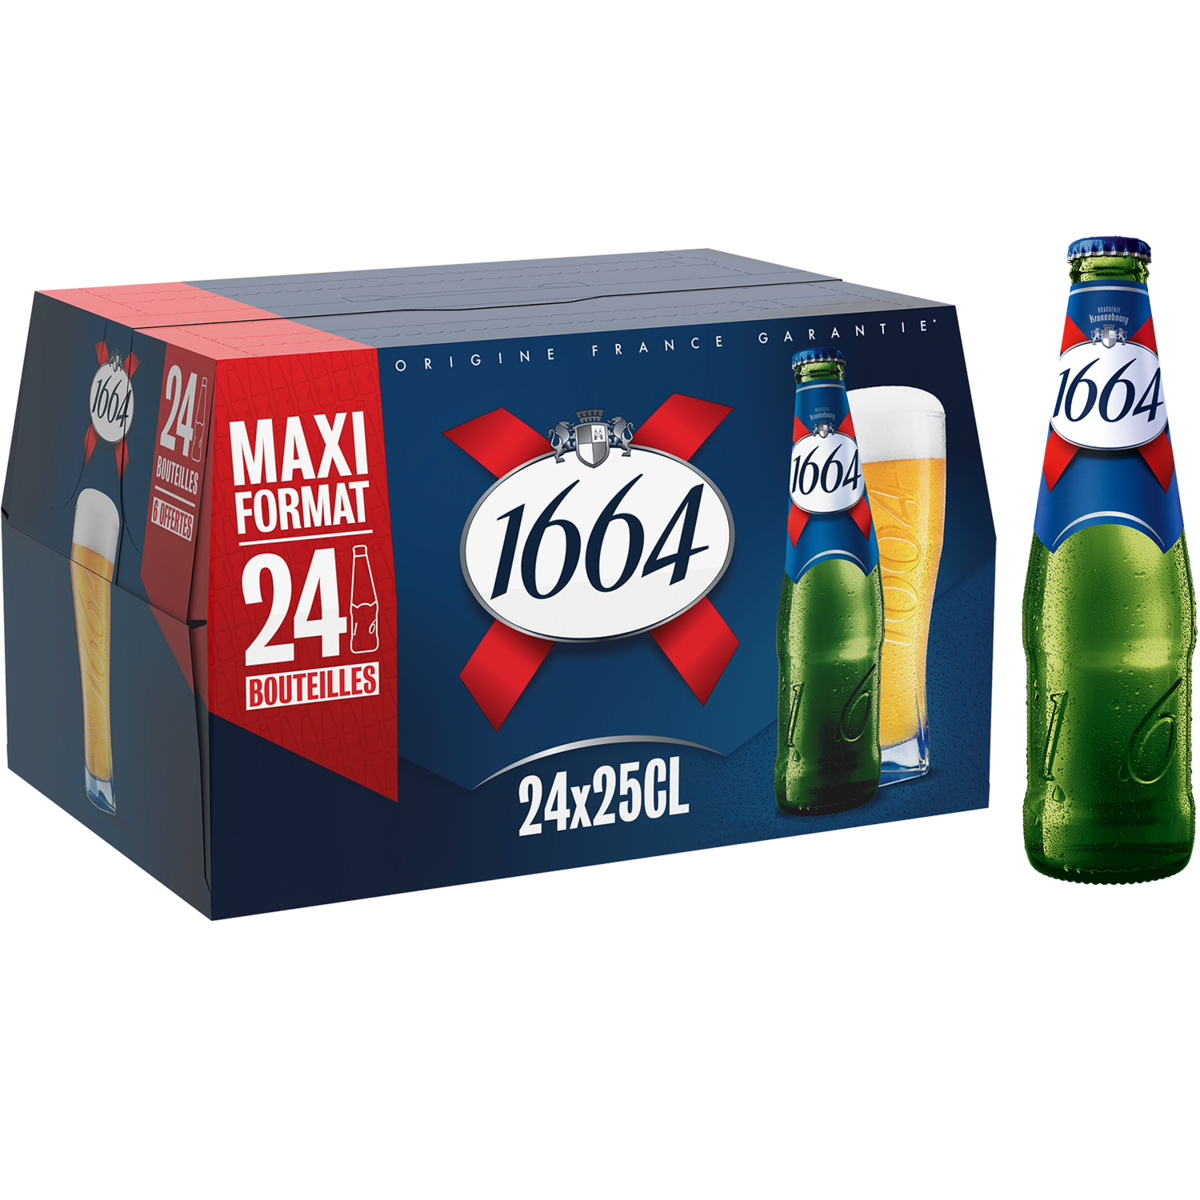 1664 Bière blonde 5,5% bouteilles 24x25cl